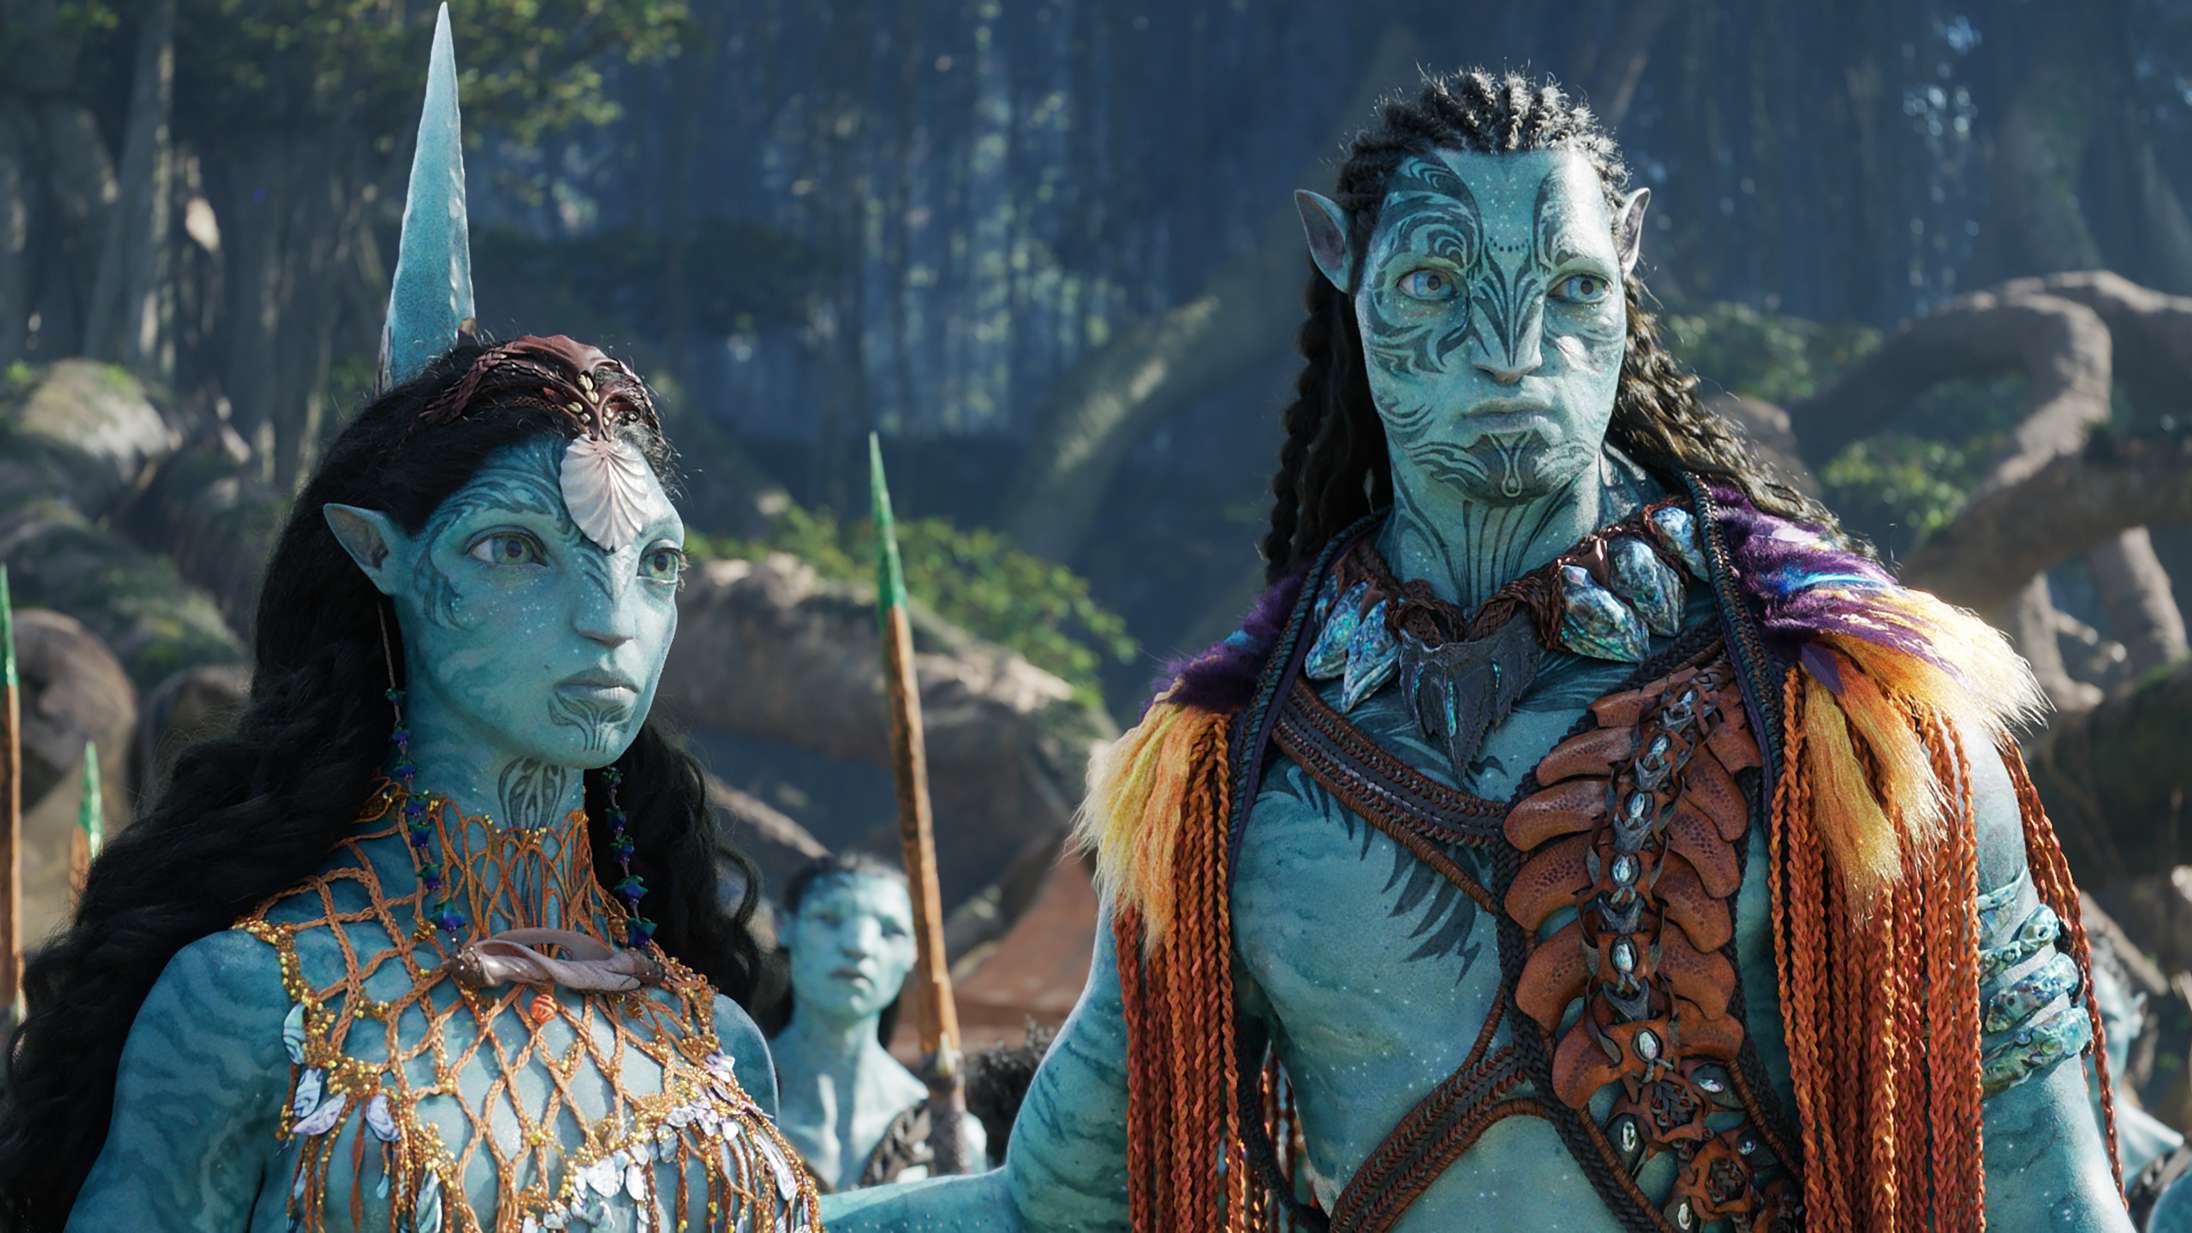 Efter forsinkelse teaser James Cameron for premieredatoen på ’Avatar 3’